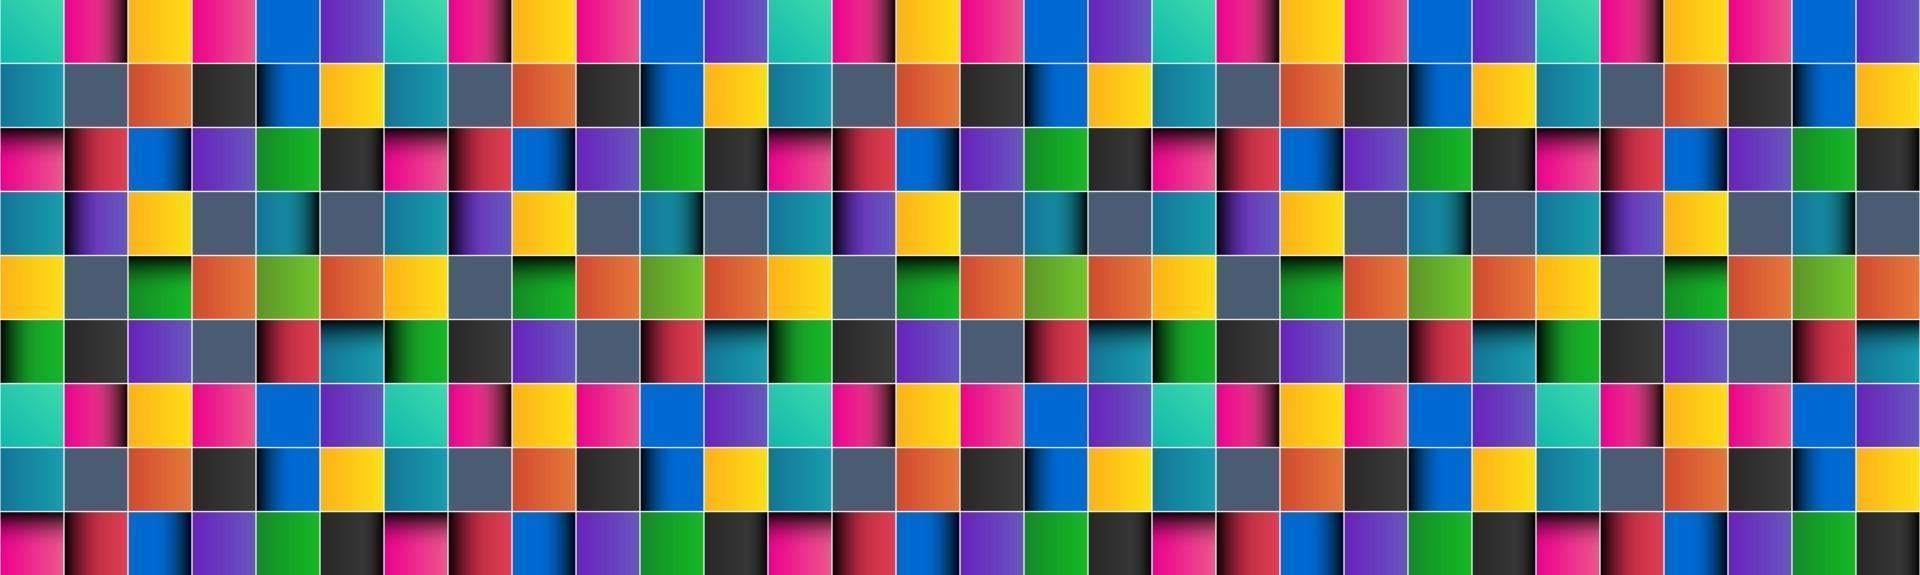 colorido quadrado cabeçalho abstrato com linhas brancas quadrado colorido com sombras banner pixel mosaico fundo ilustração vetorial vetor